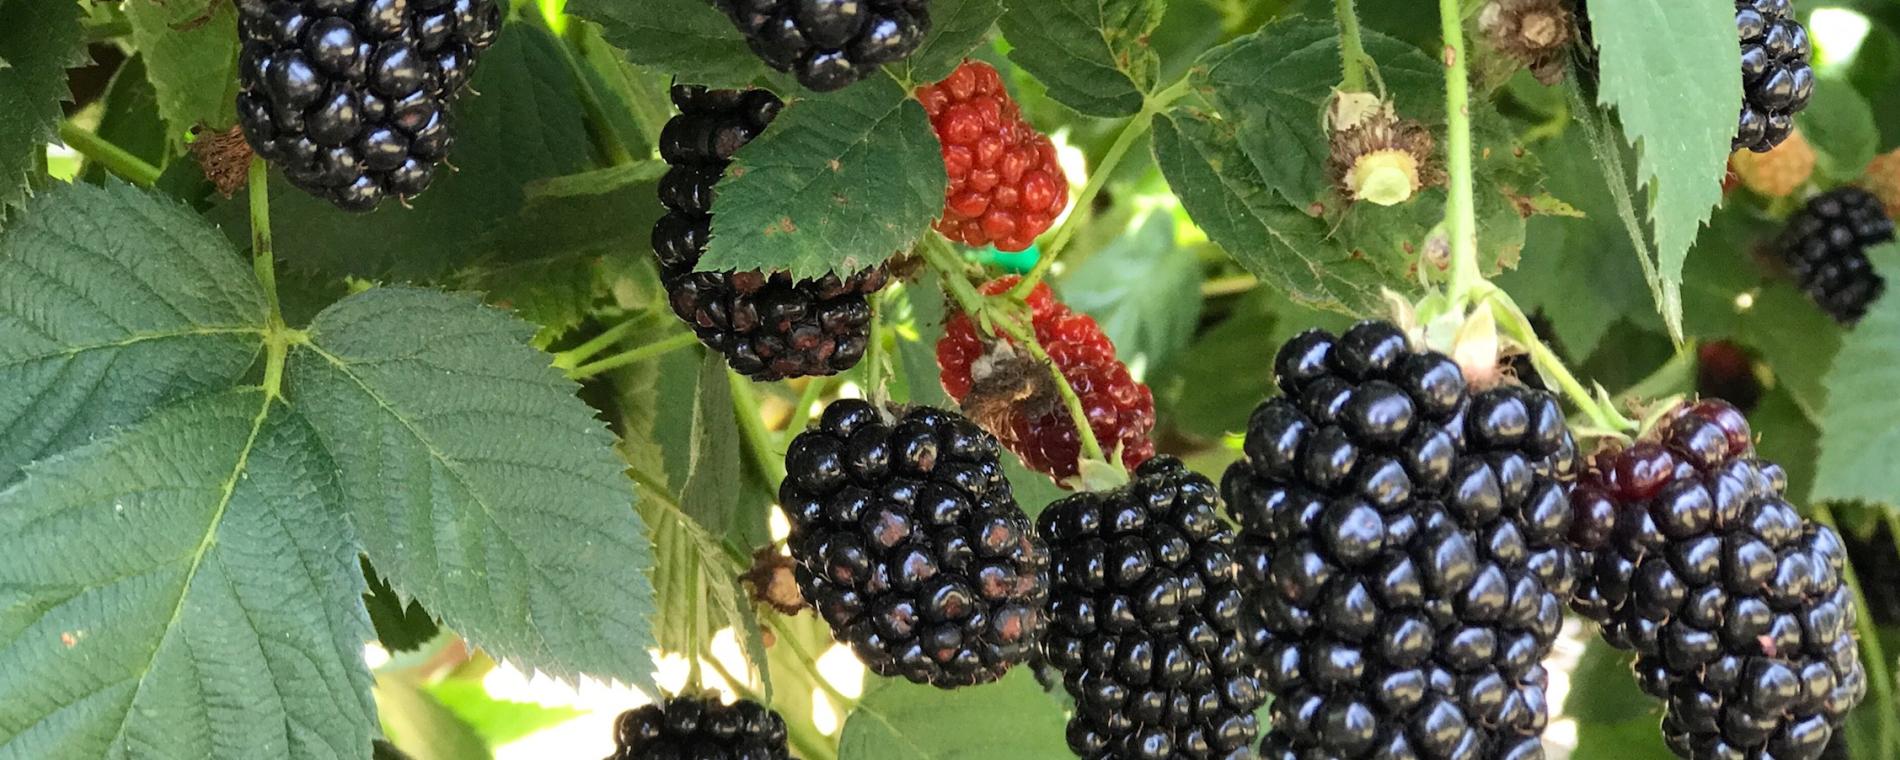 Elderslie Farm Blackberries Ready for You-Pickers in June/July